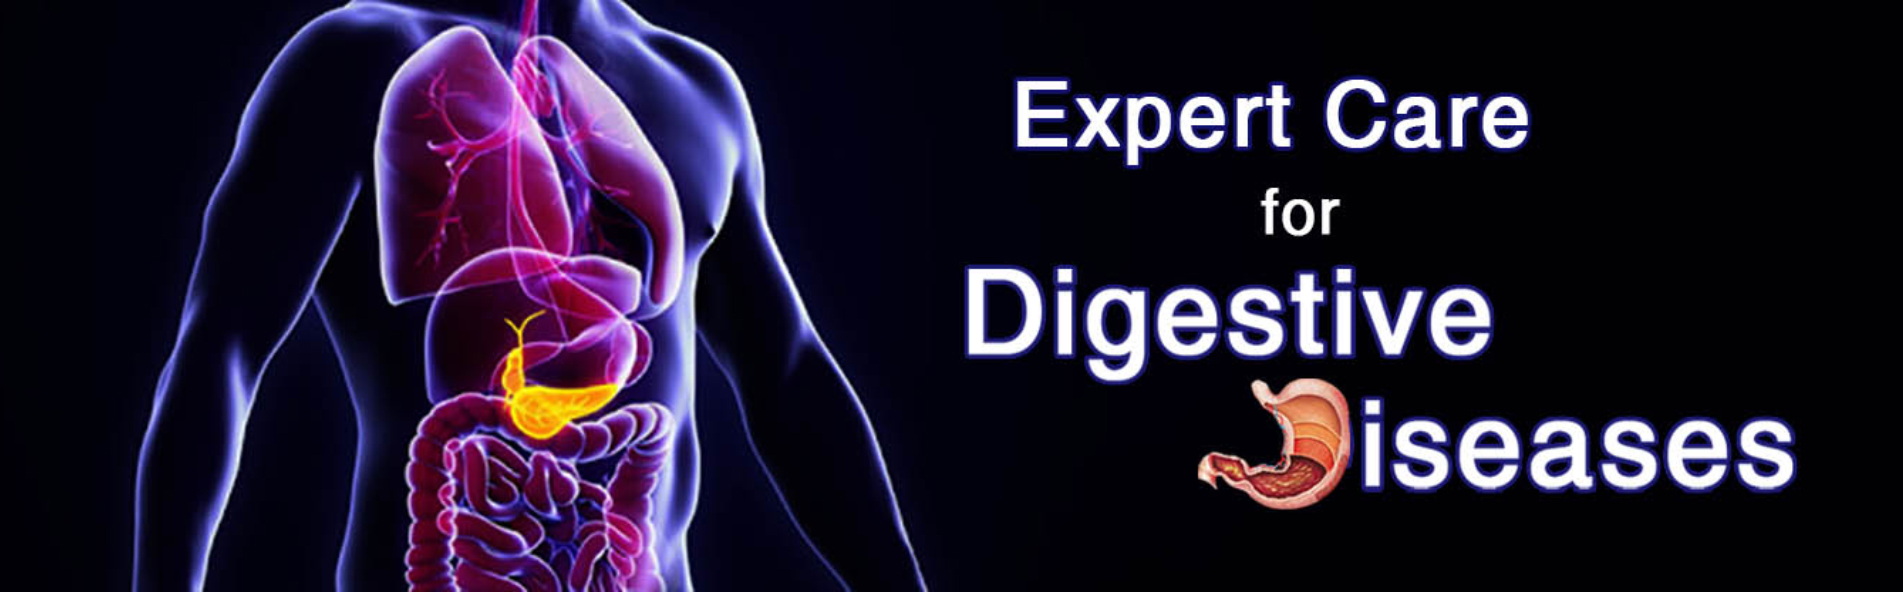 Digestive Health - Endoscopy Consultnats